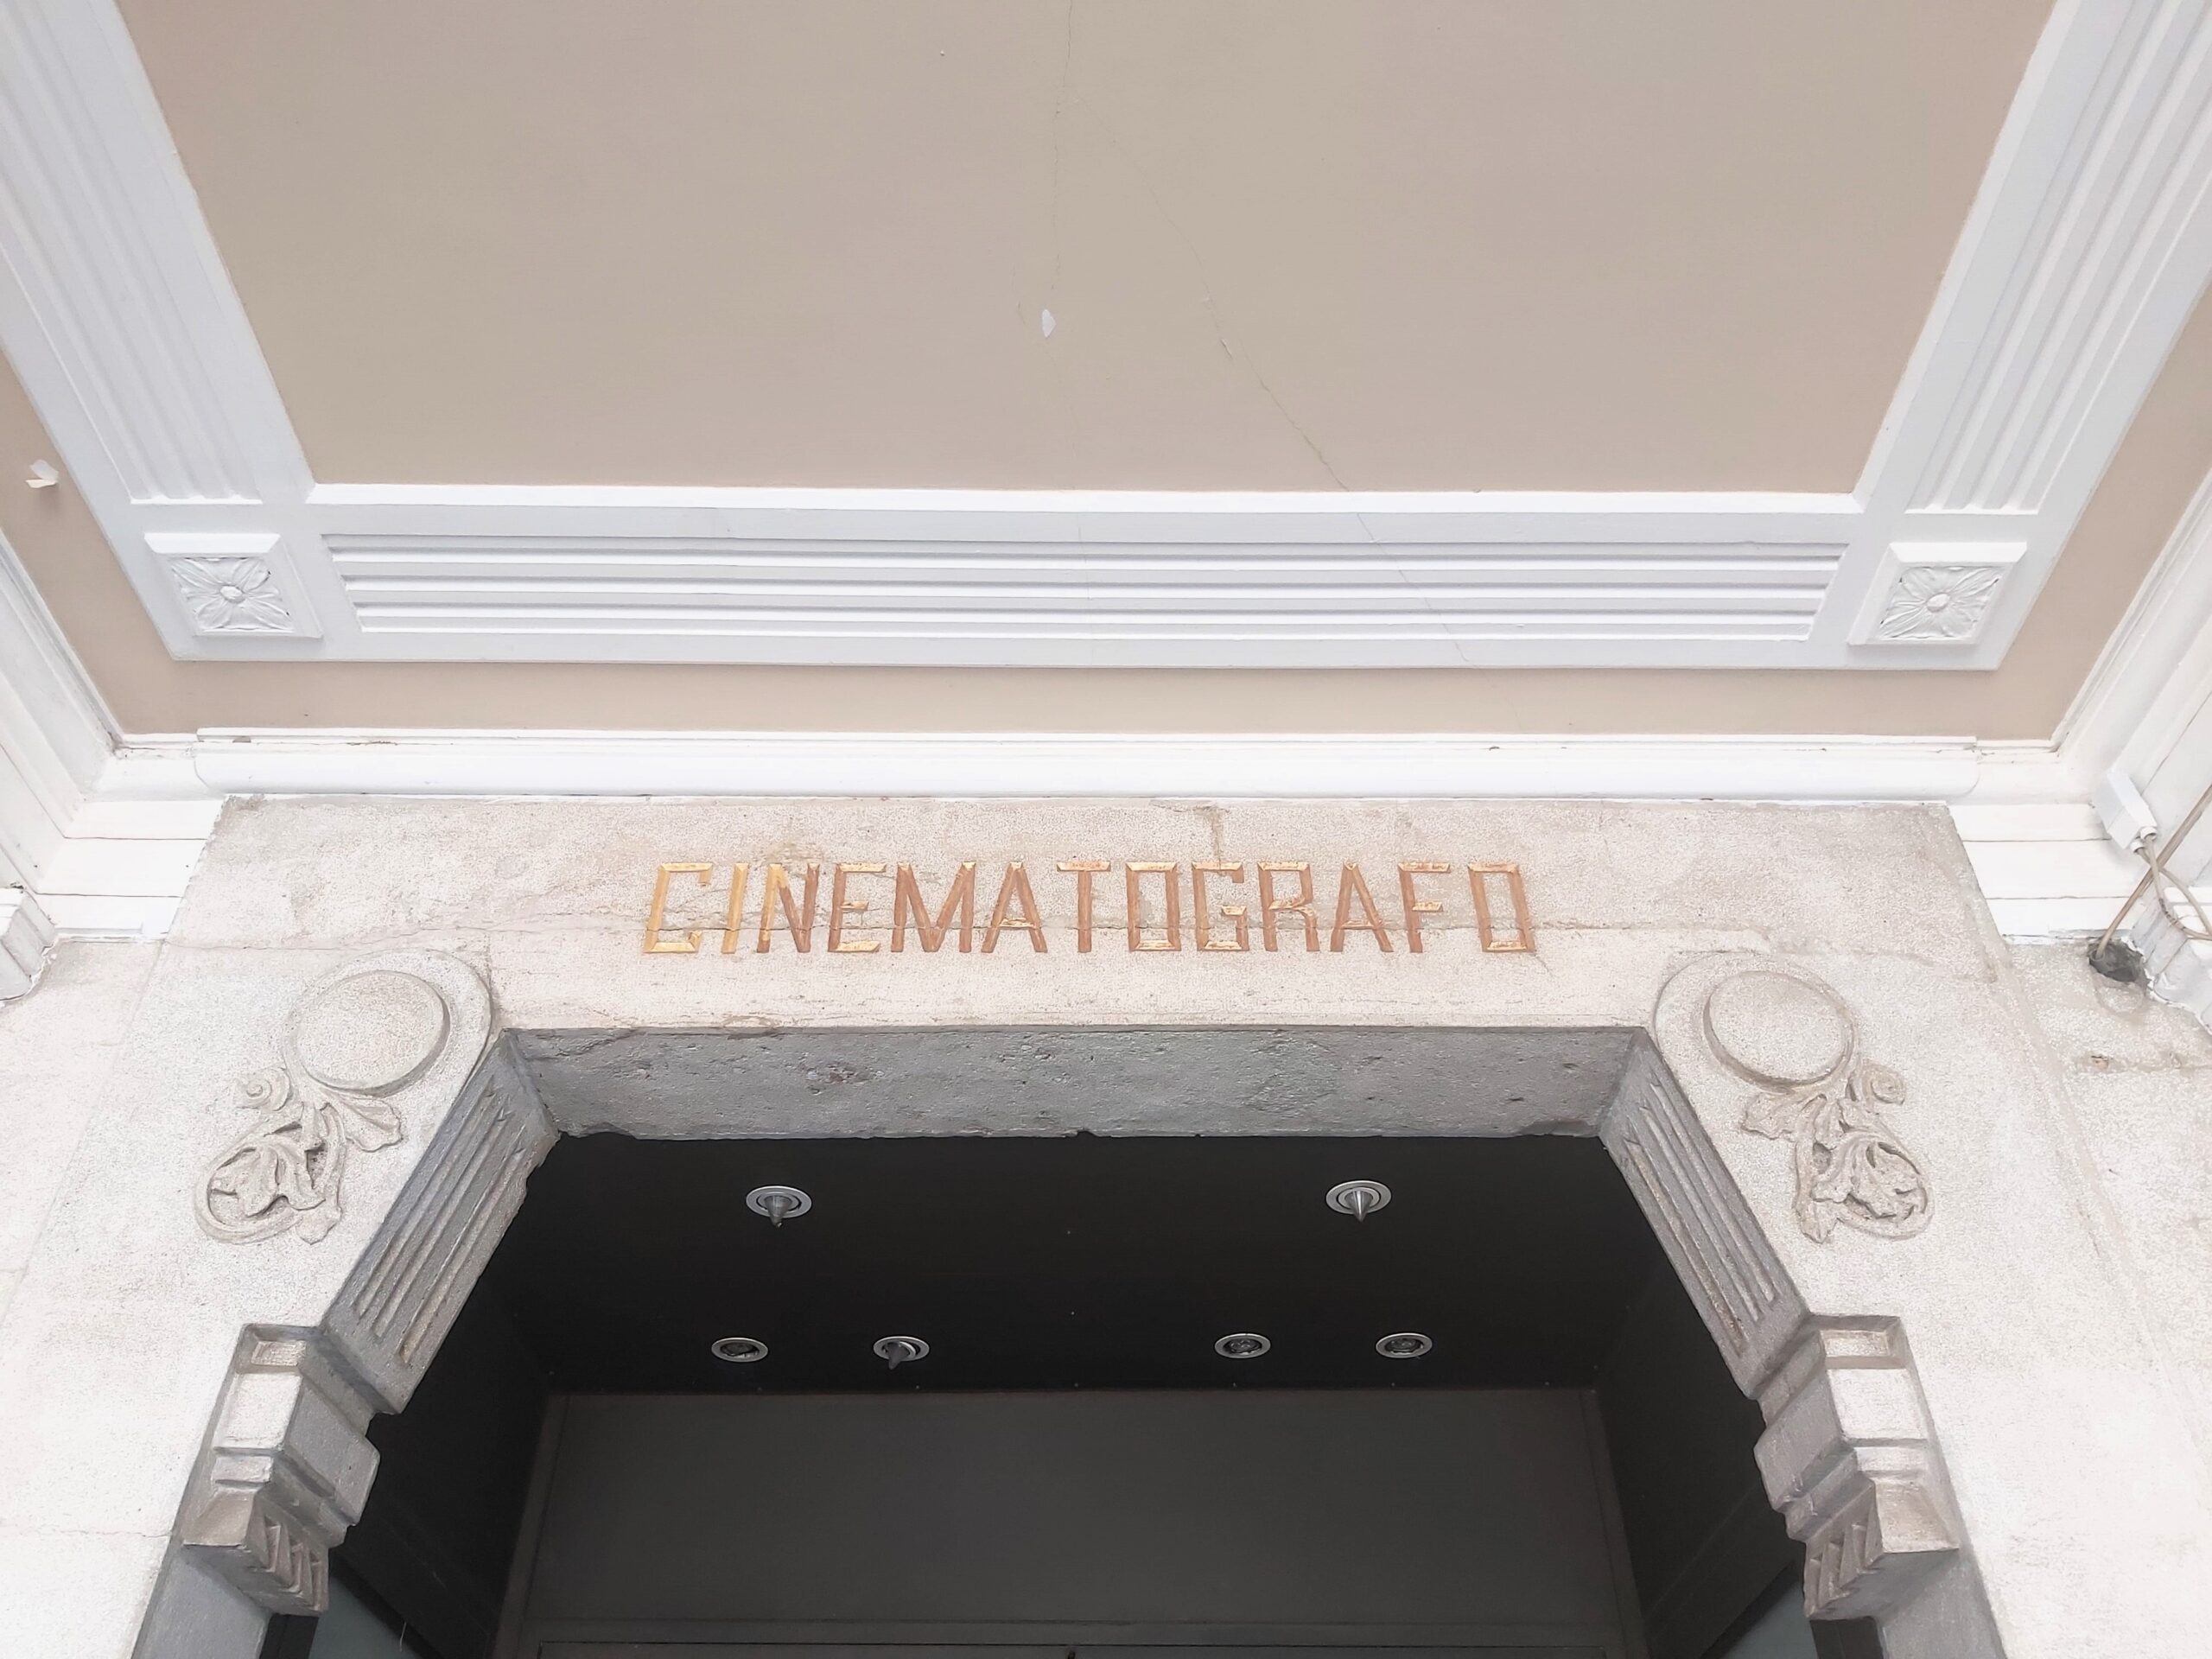 Art deco cinematografo inscription, Mestre, Italy